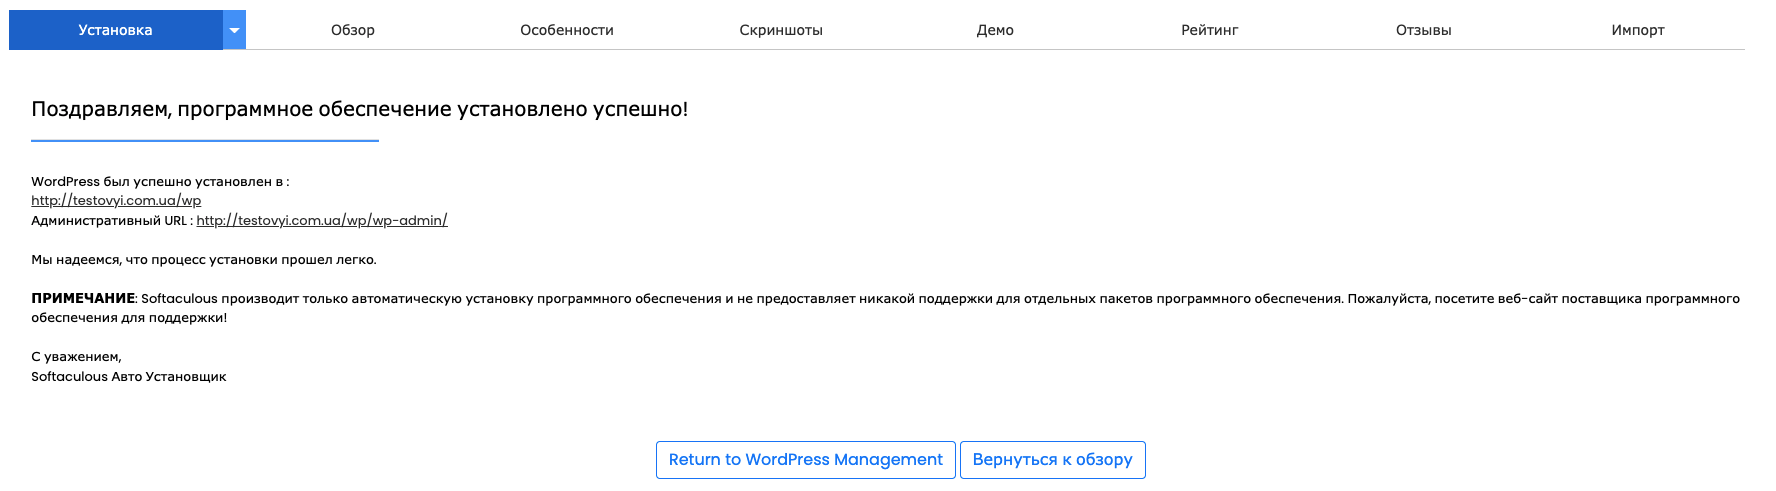 Самый быстрый WordPress Хостинг | HostPro.ua